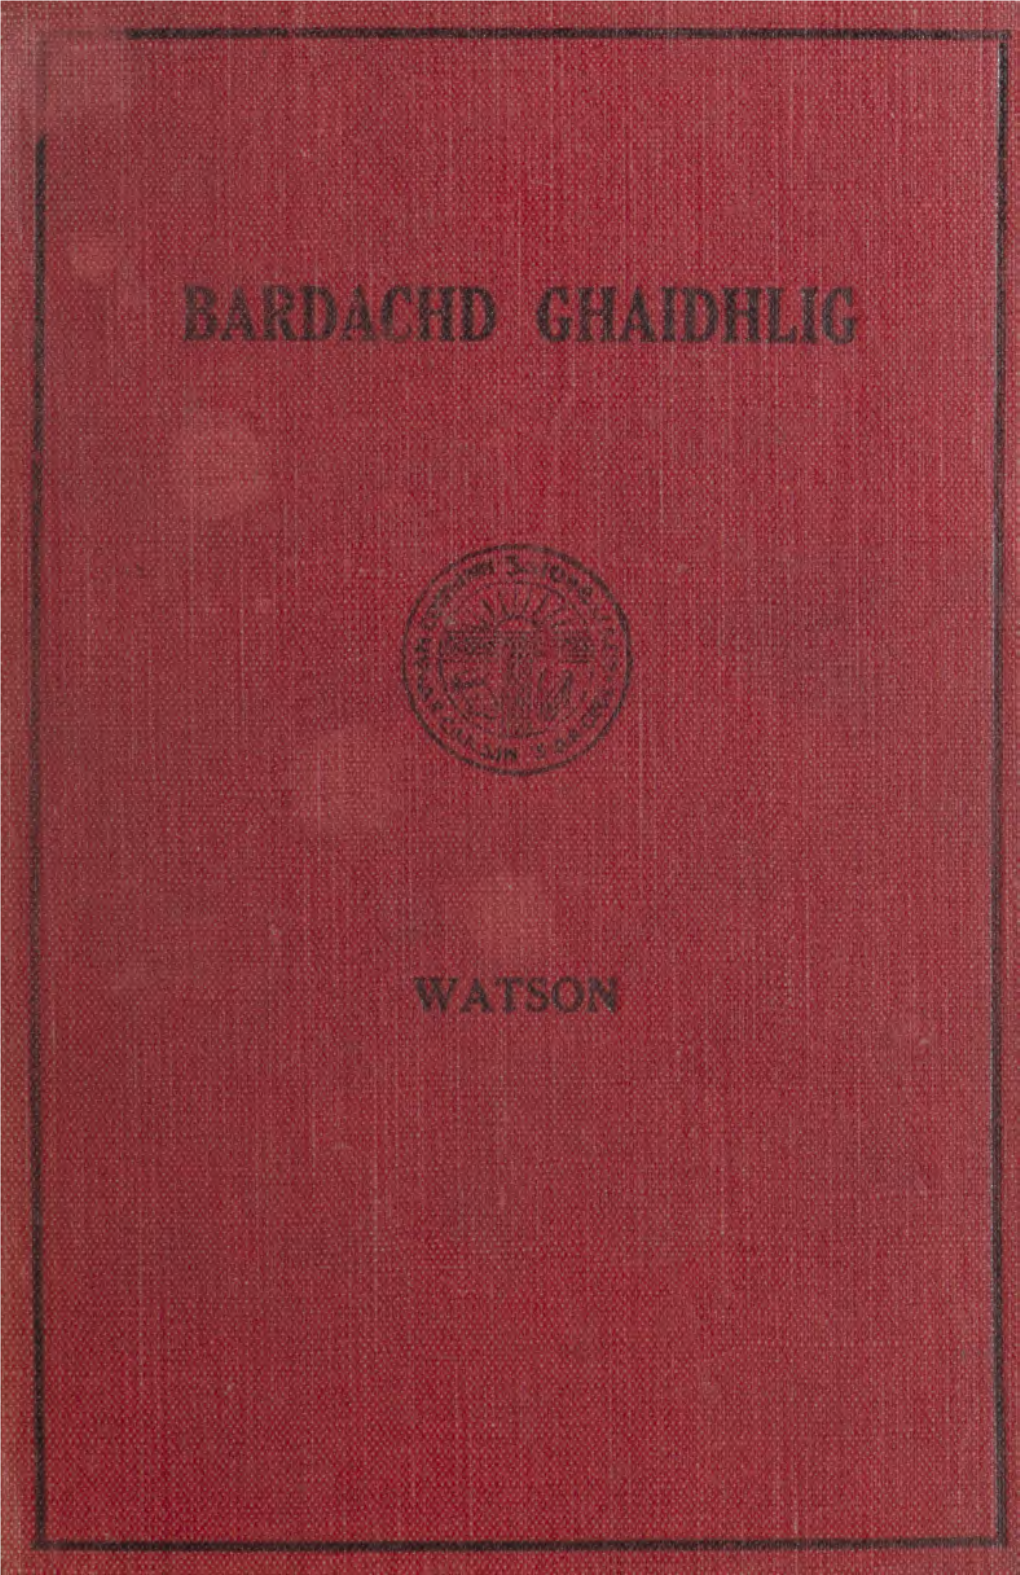 Bardachd Ghaidhlig